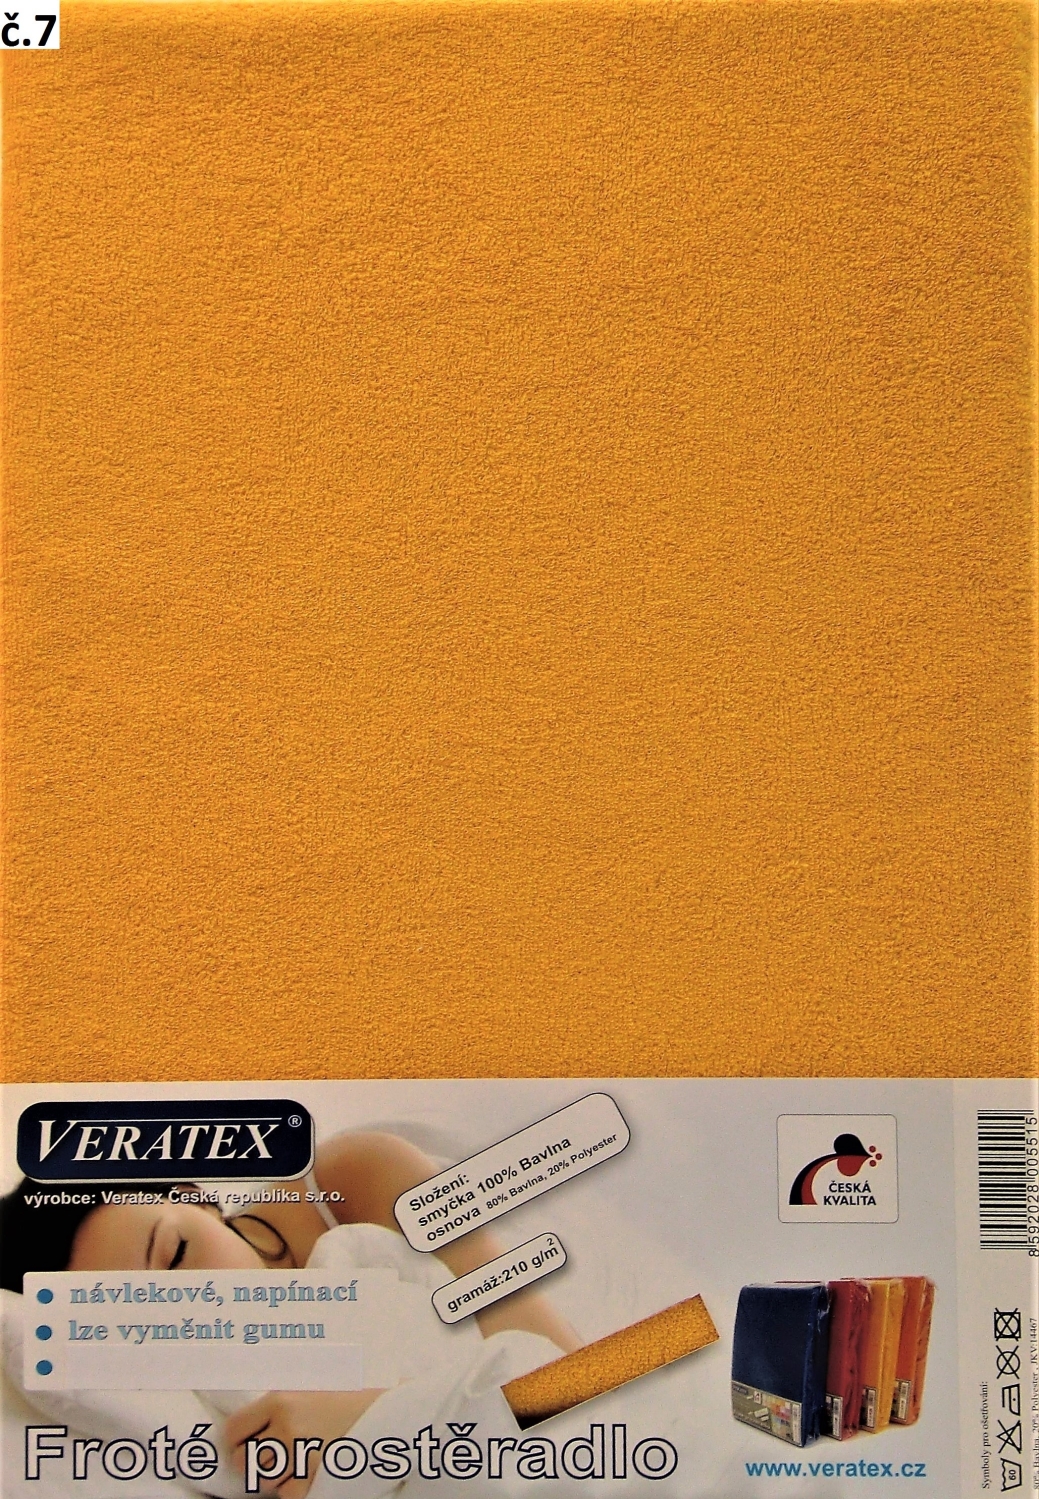 Veratex Froté prostěradlo jednolůžko 80x200/25cm (č. 7-sytě žluté)